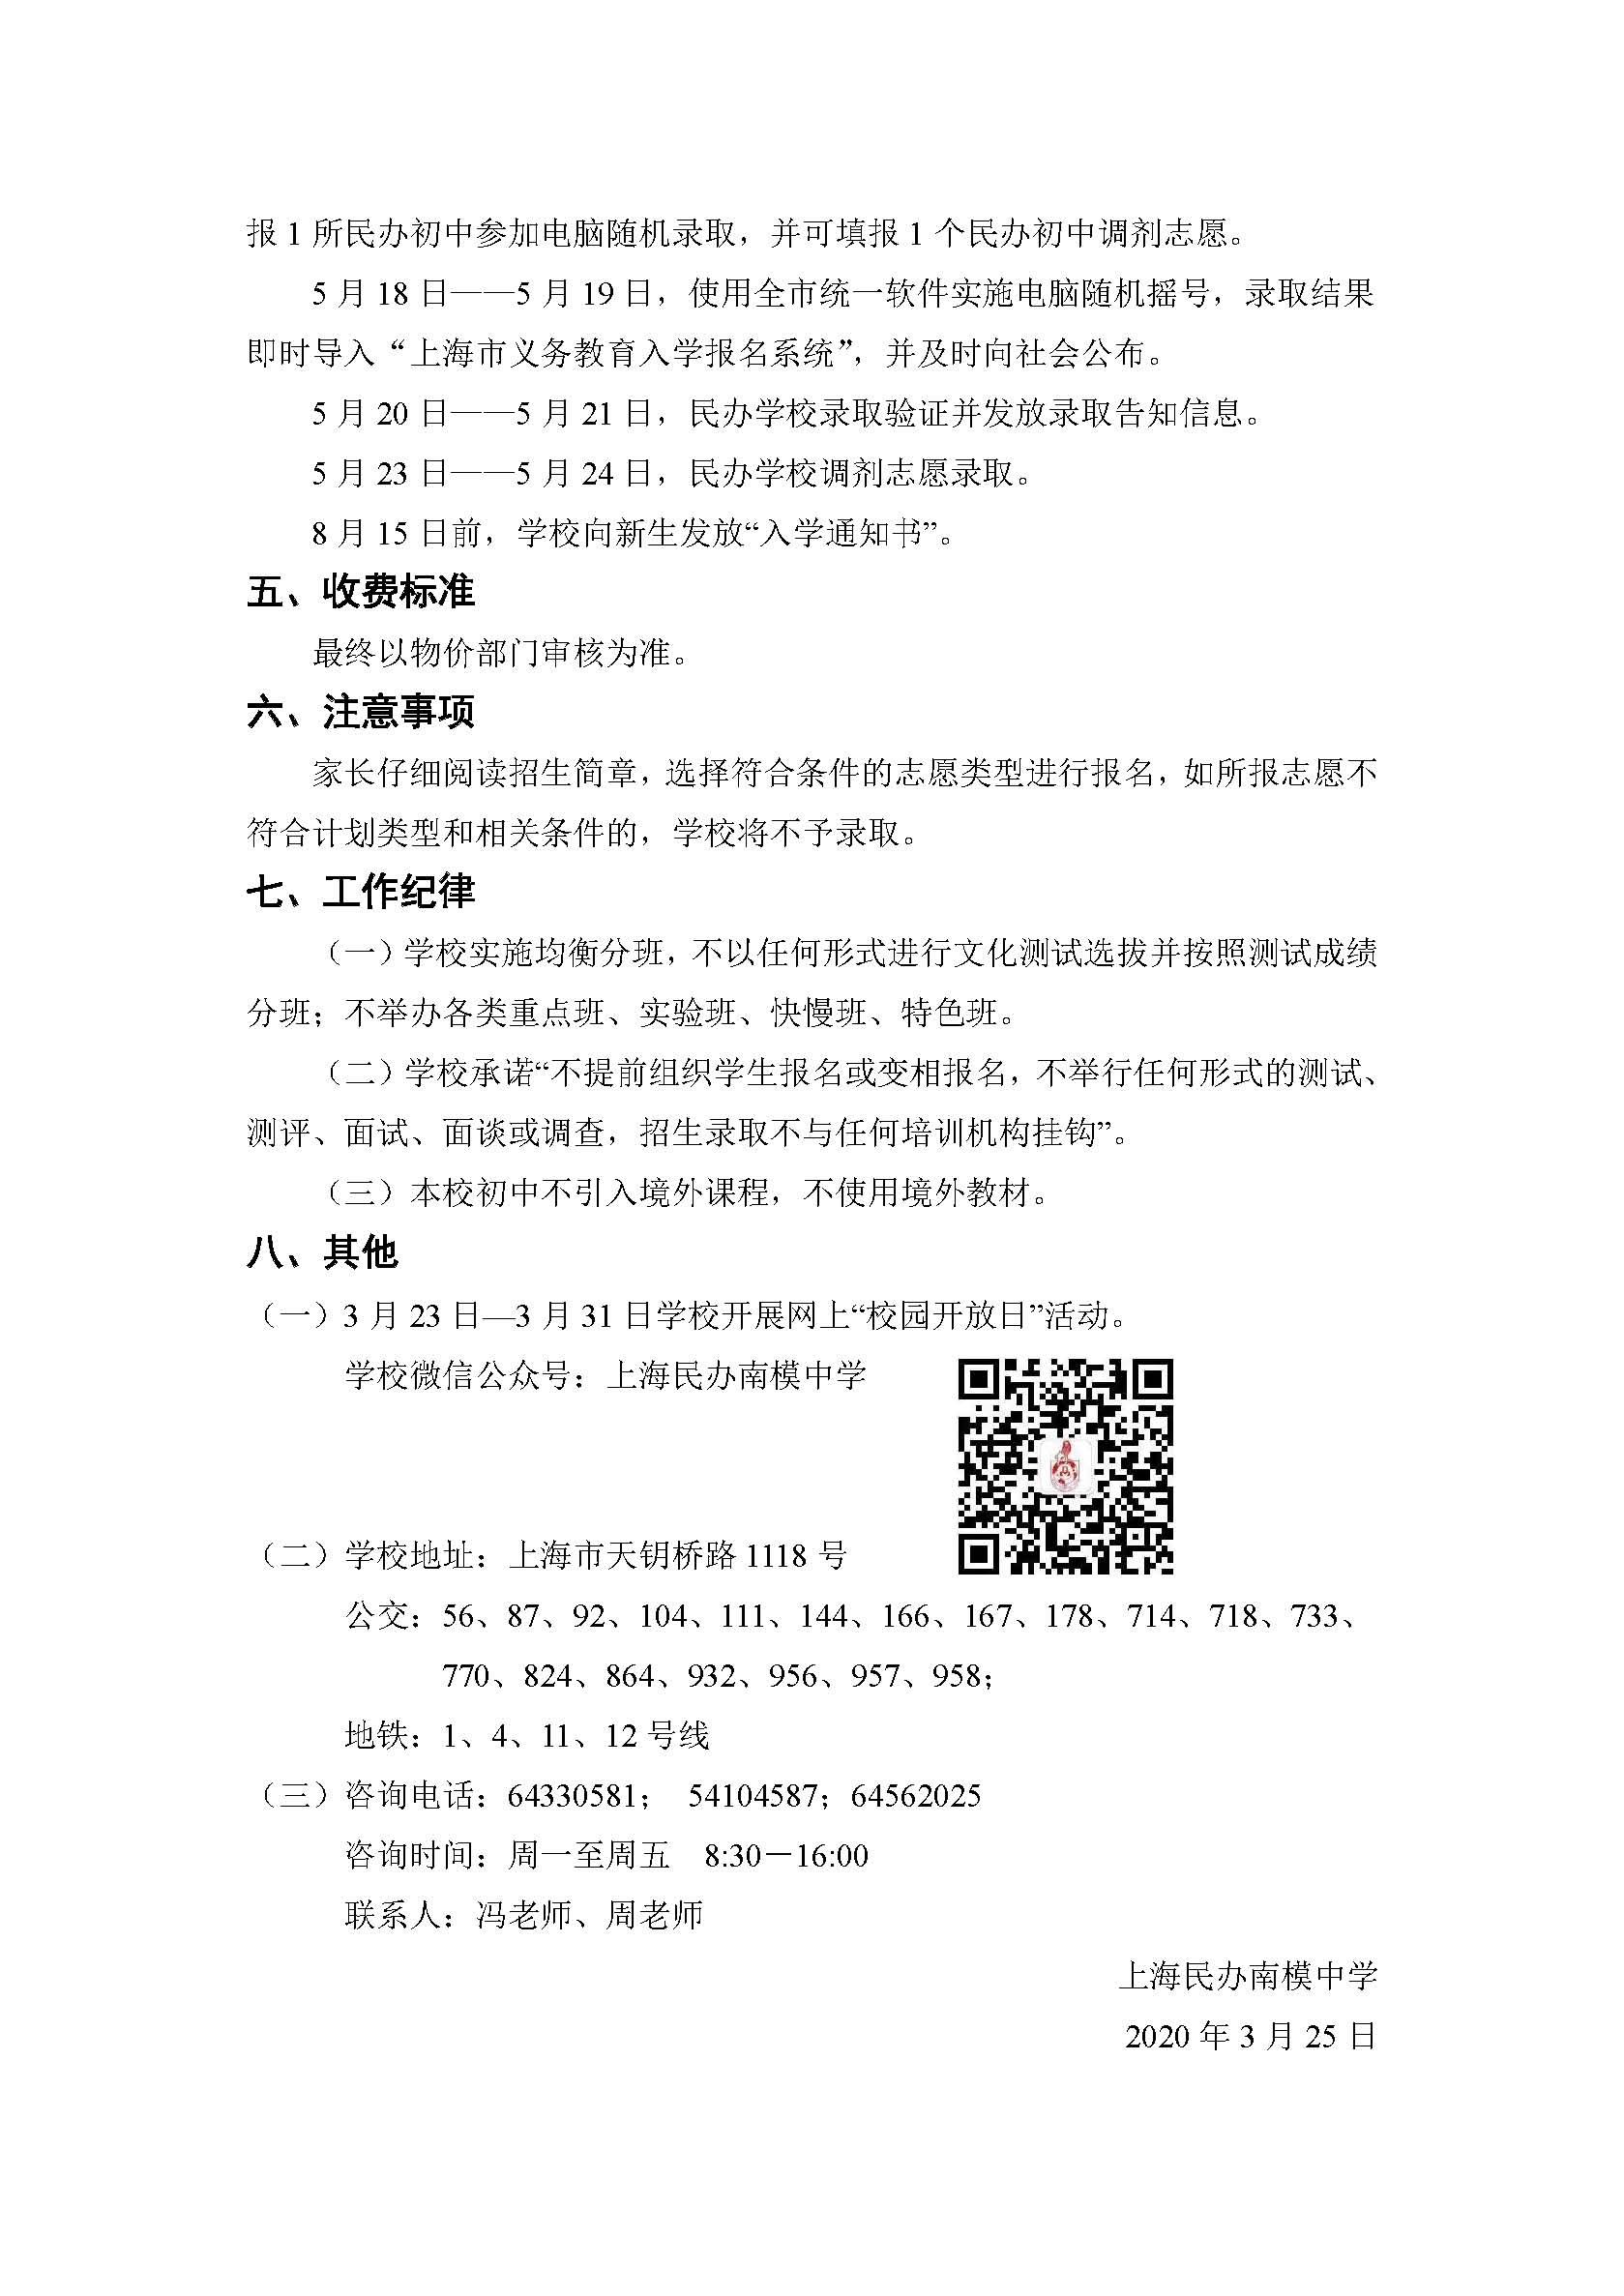 2020年上海民办南模中学招生简章（公示版）_页面_2.jpg